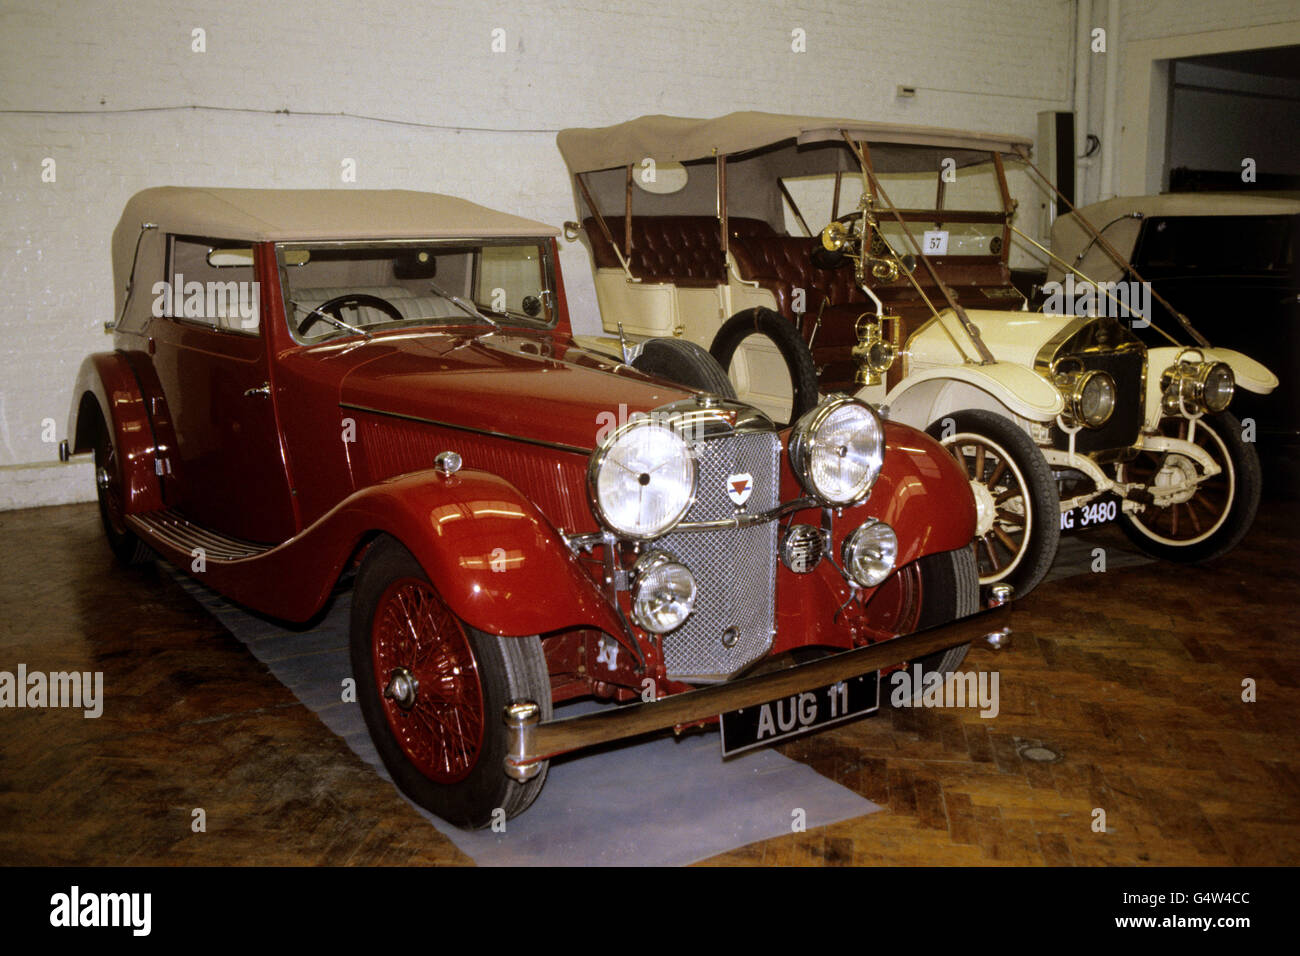 A 1934 Alvis Speed Twenty 2.5 Litre Drophead Coupe awaits sale at Sotheby's Vintage Car Auction Stock Photo